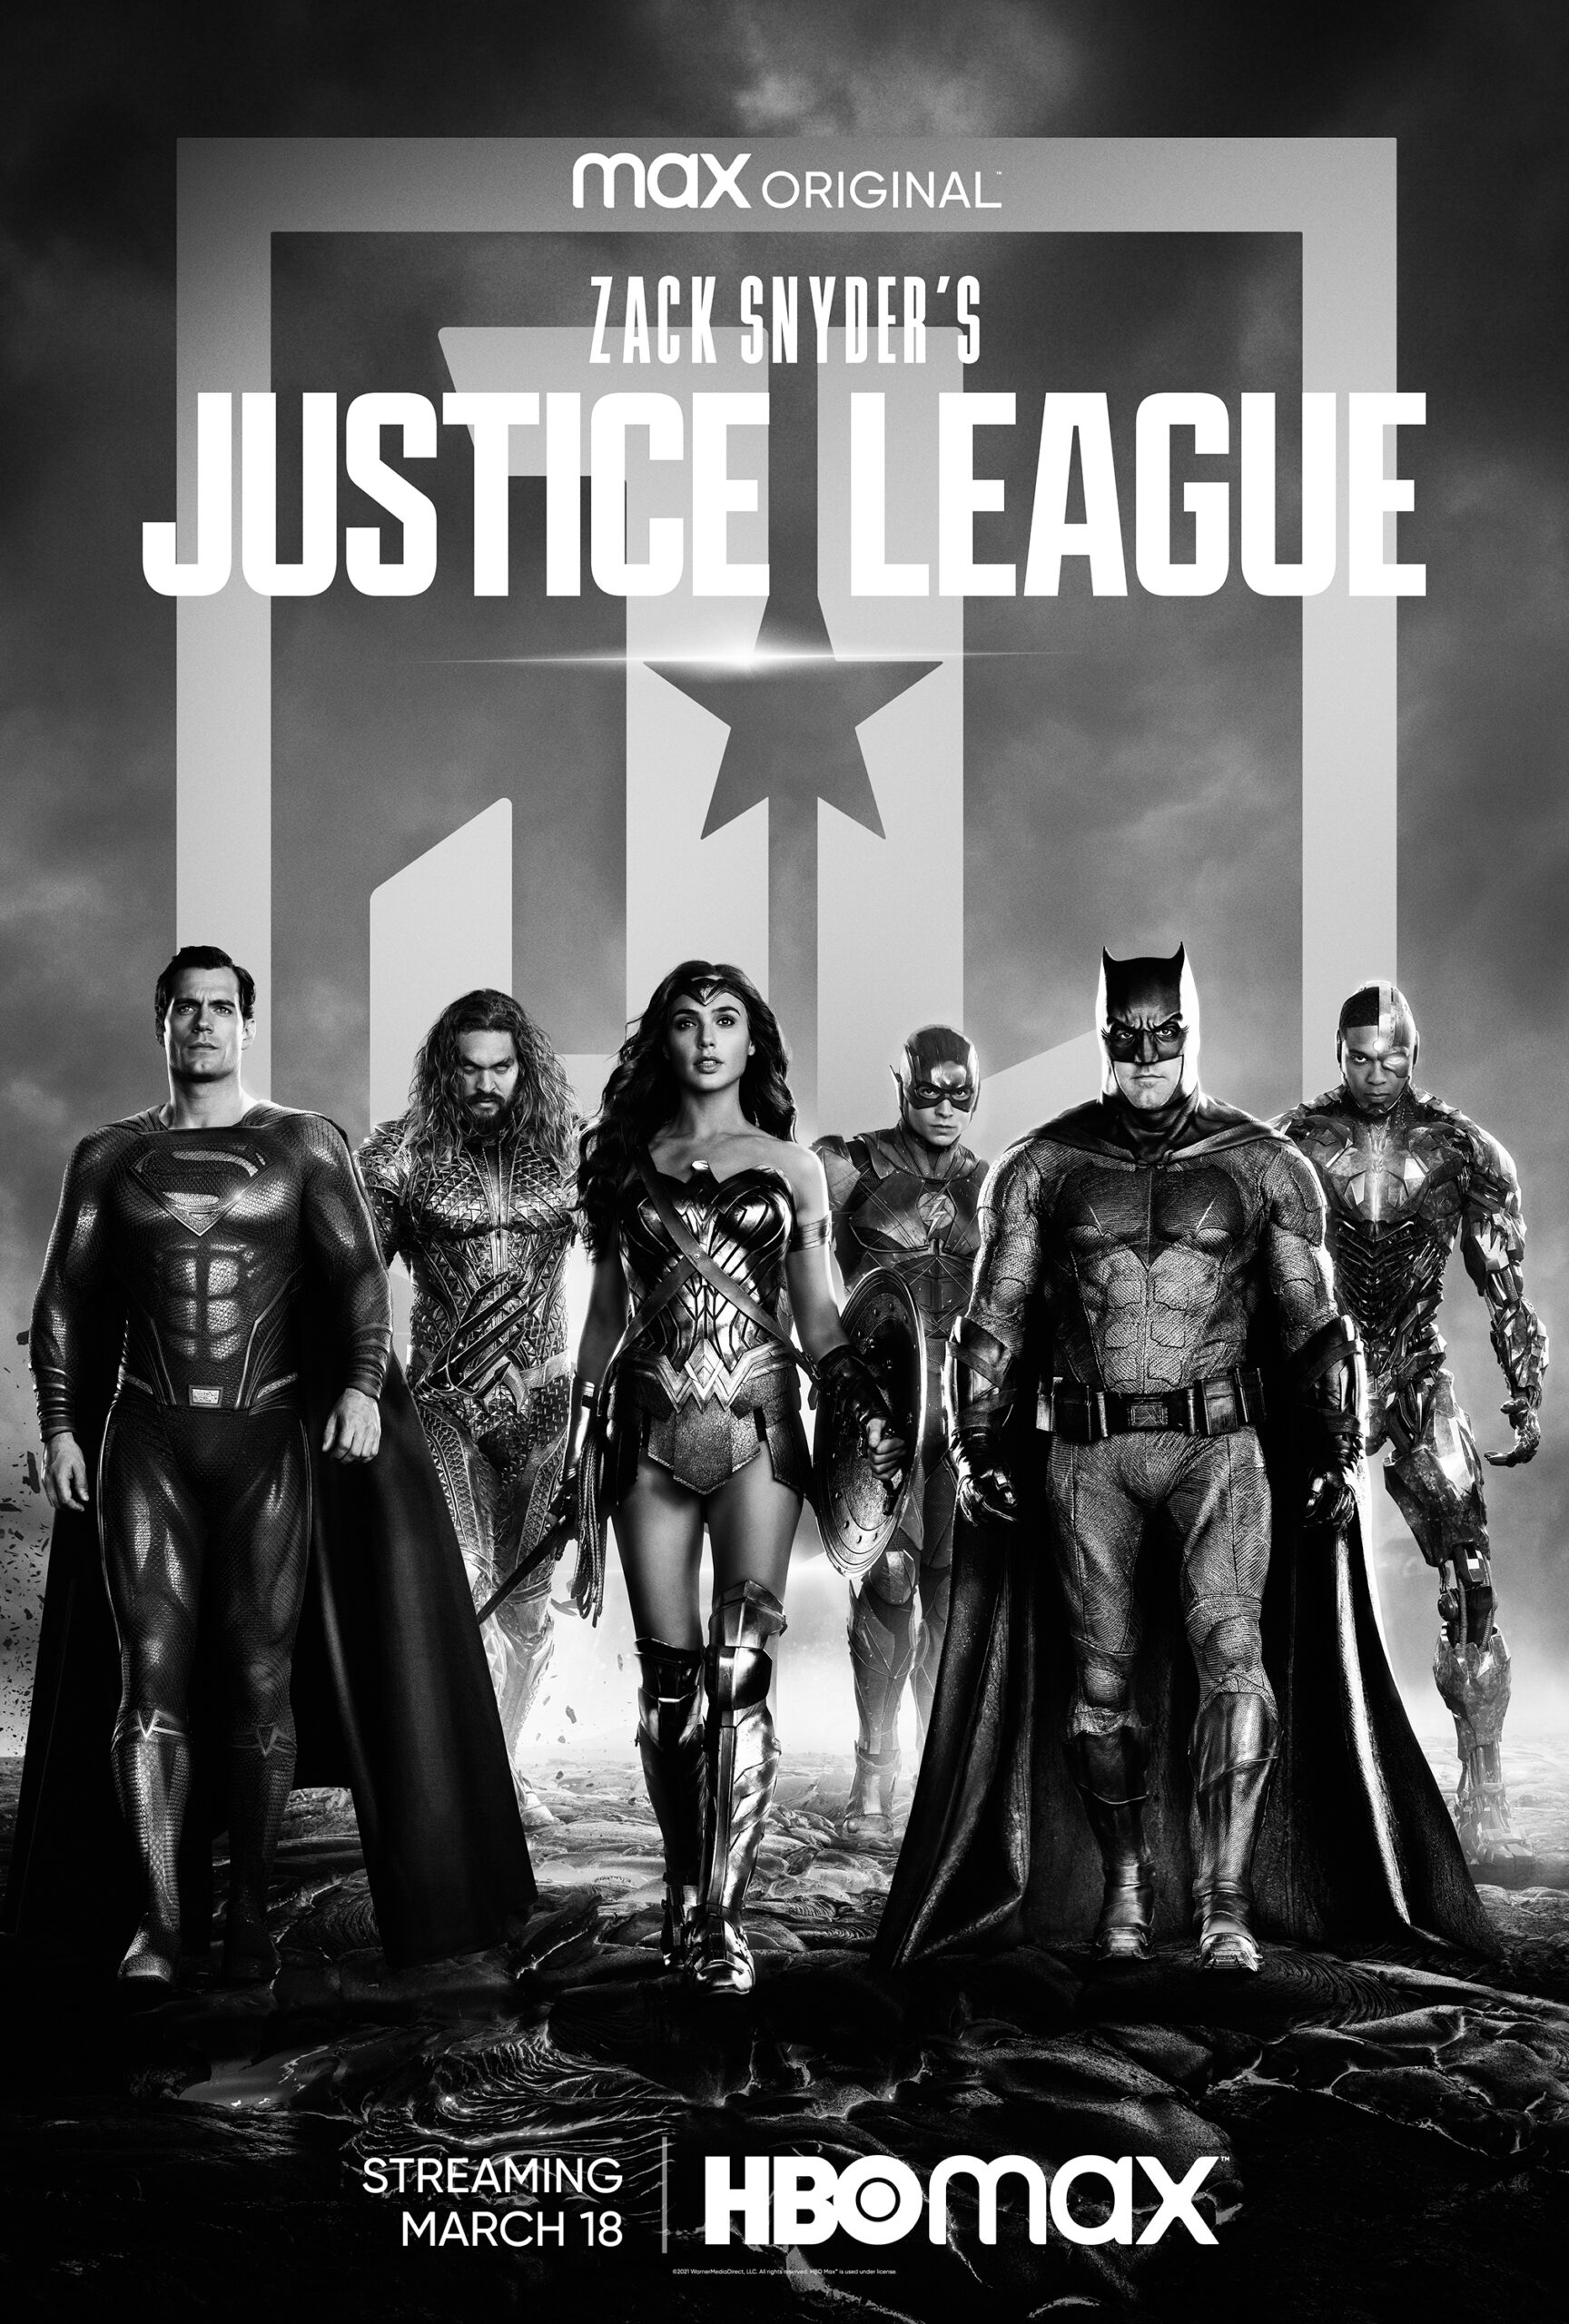 لیگ عدالت زک اسنایدر (Zack Snyder’s Justice League)